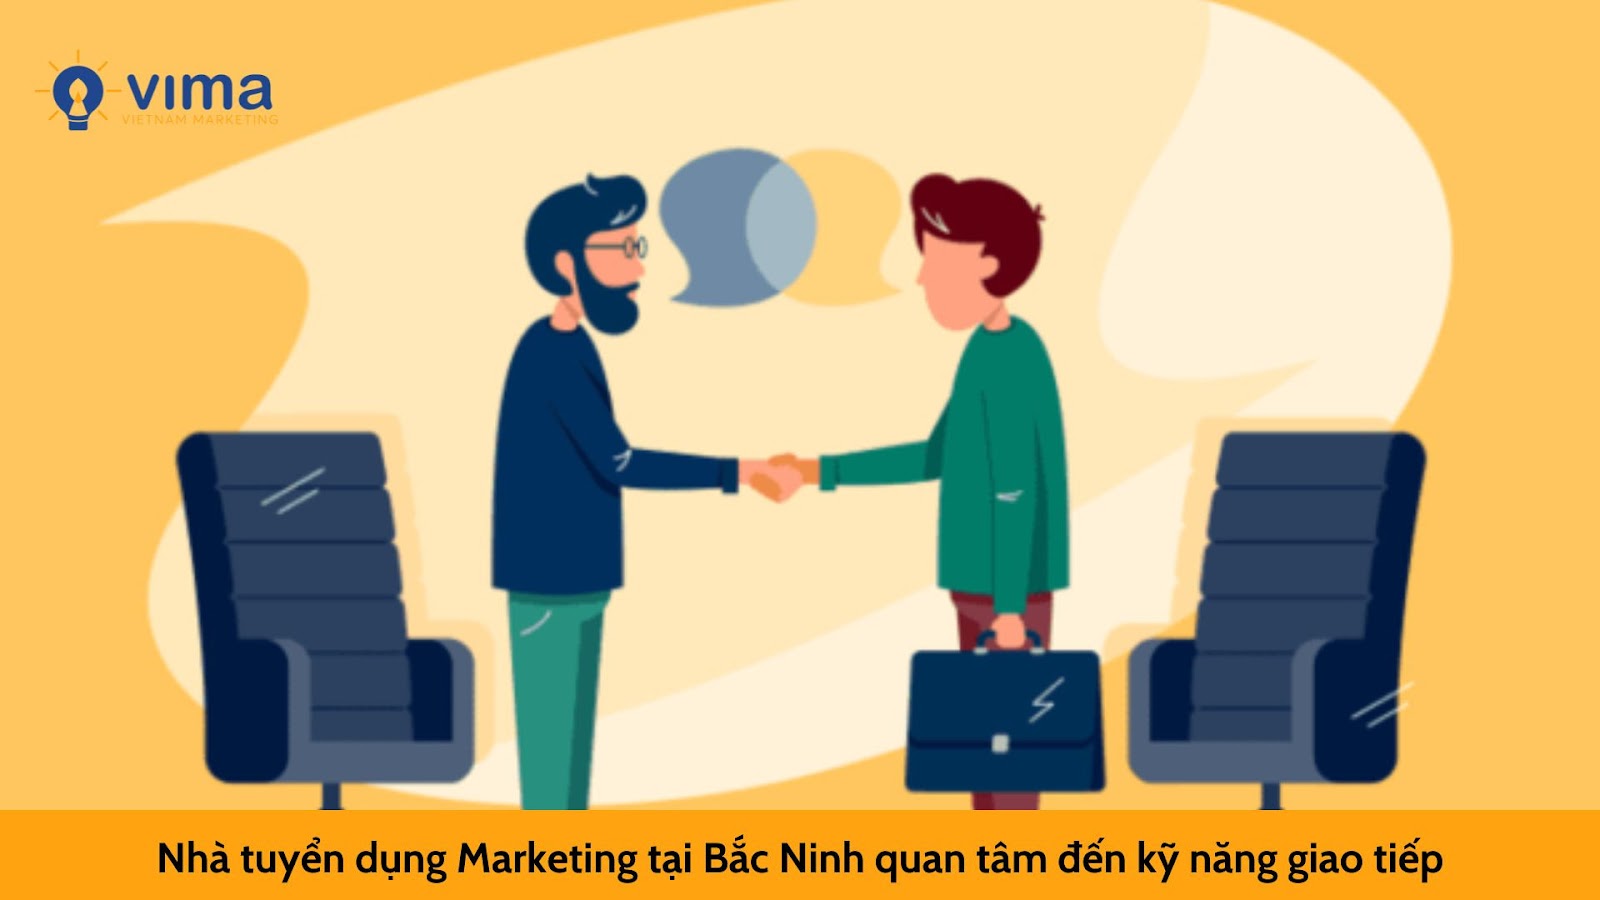 6 kỹ năng mà nhà tuyển dụng Marketing tại Bắc Ninh muốn thấy ở CV của bạn